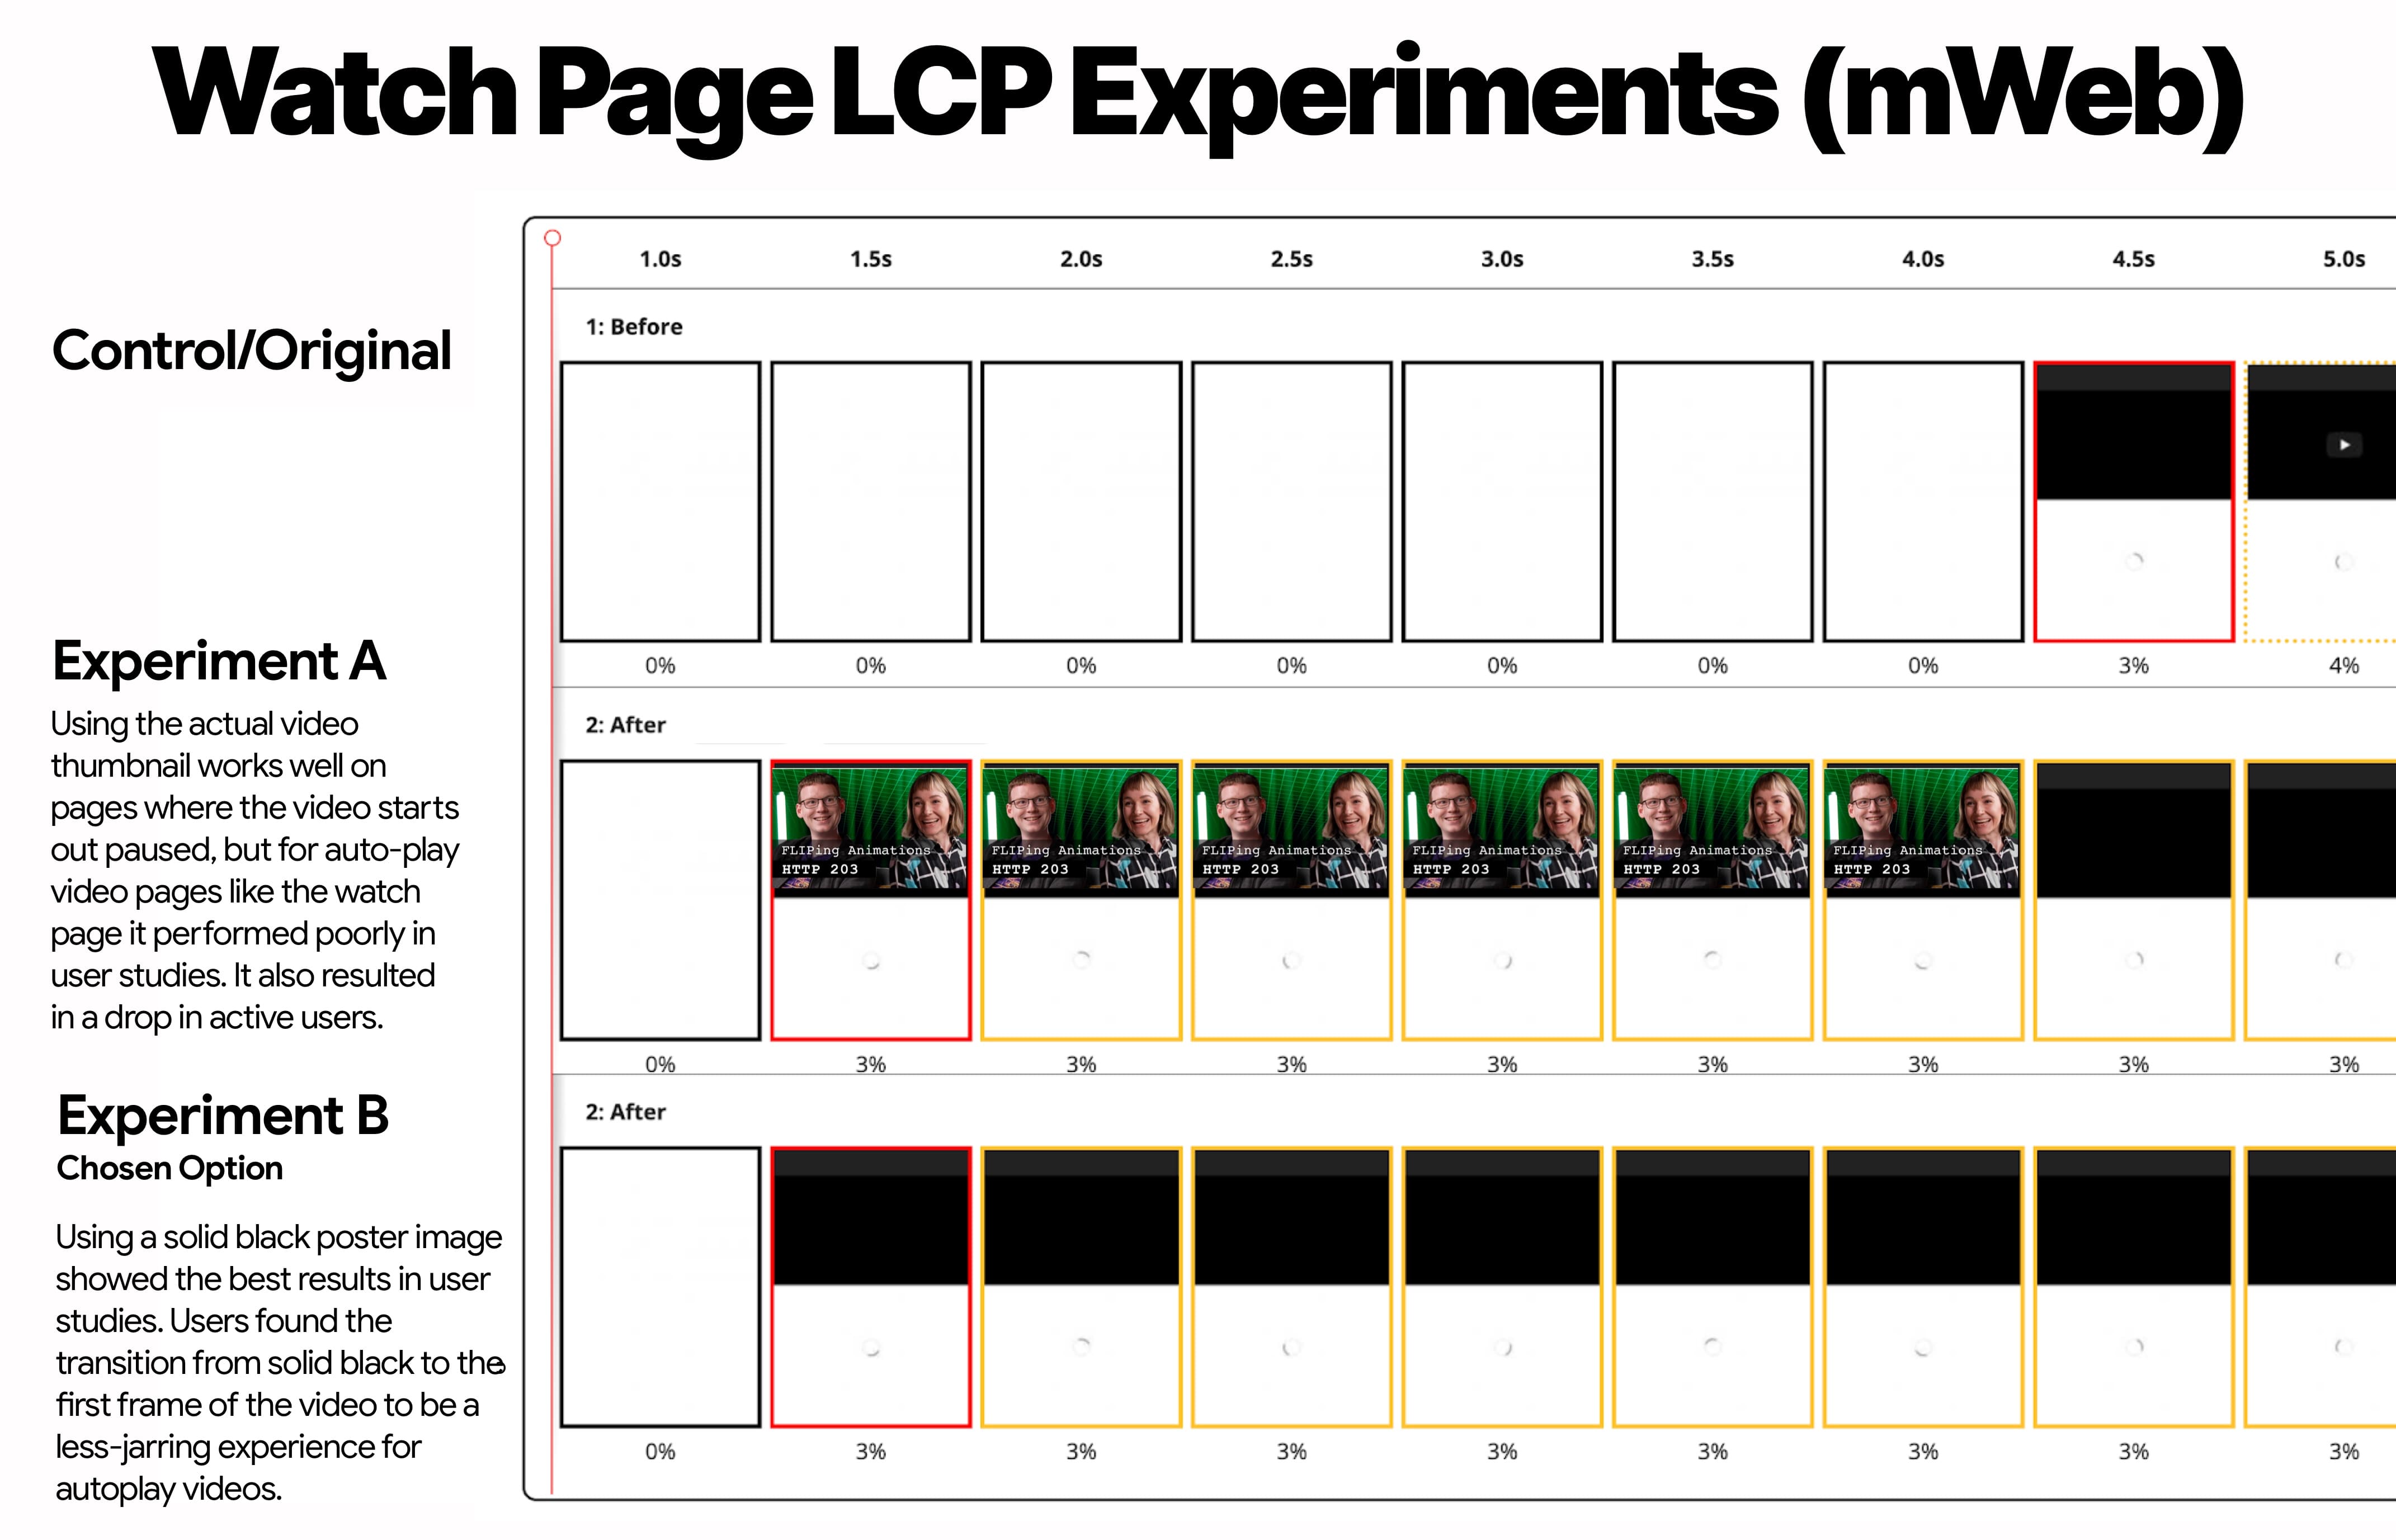 การทดสอบ LCP ของหน้าสำหรับดูบนอุปกรณ์เคลื่อนที่ที่แสดงการควบคุม การทดสอบ A (รูปภาพขนาดย่อ) และการทดสอบ B (ภาพขนาดย่อสีดำ)